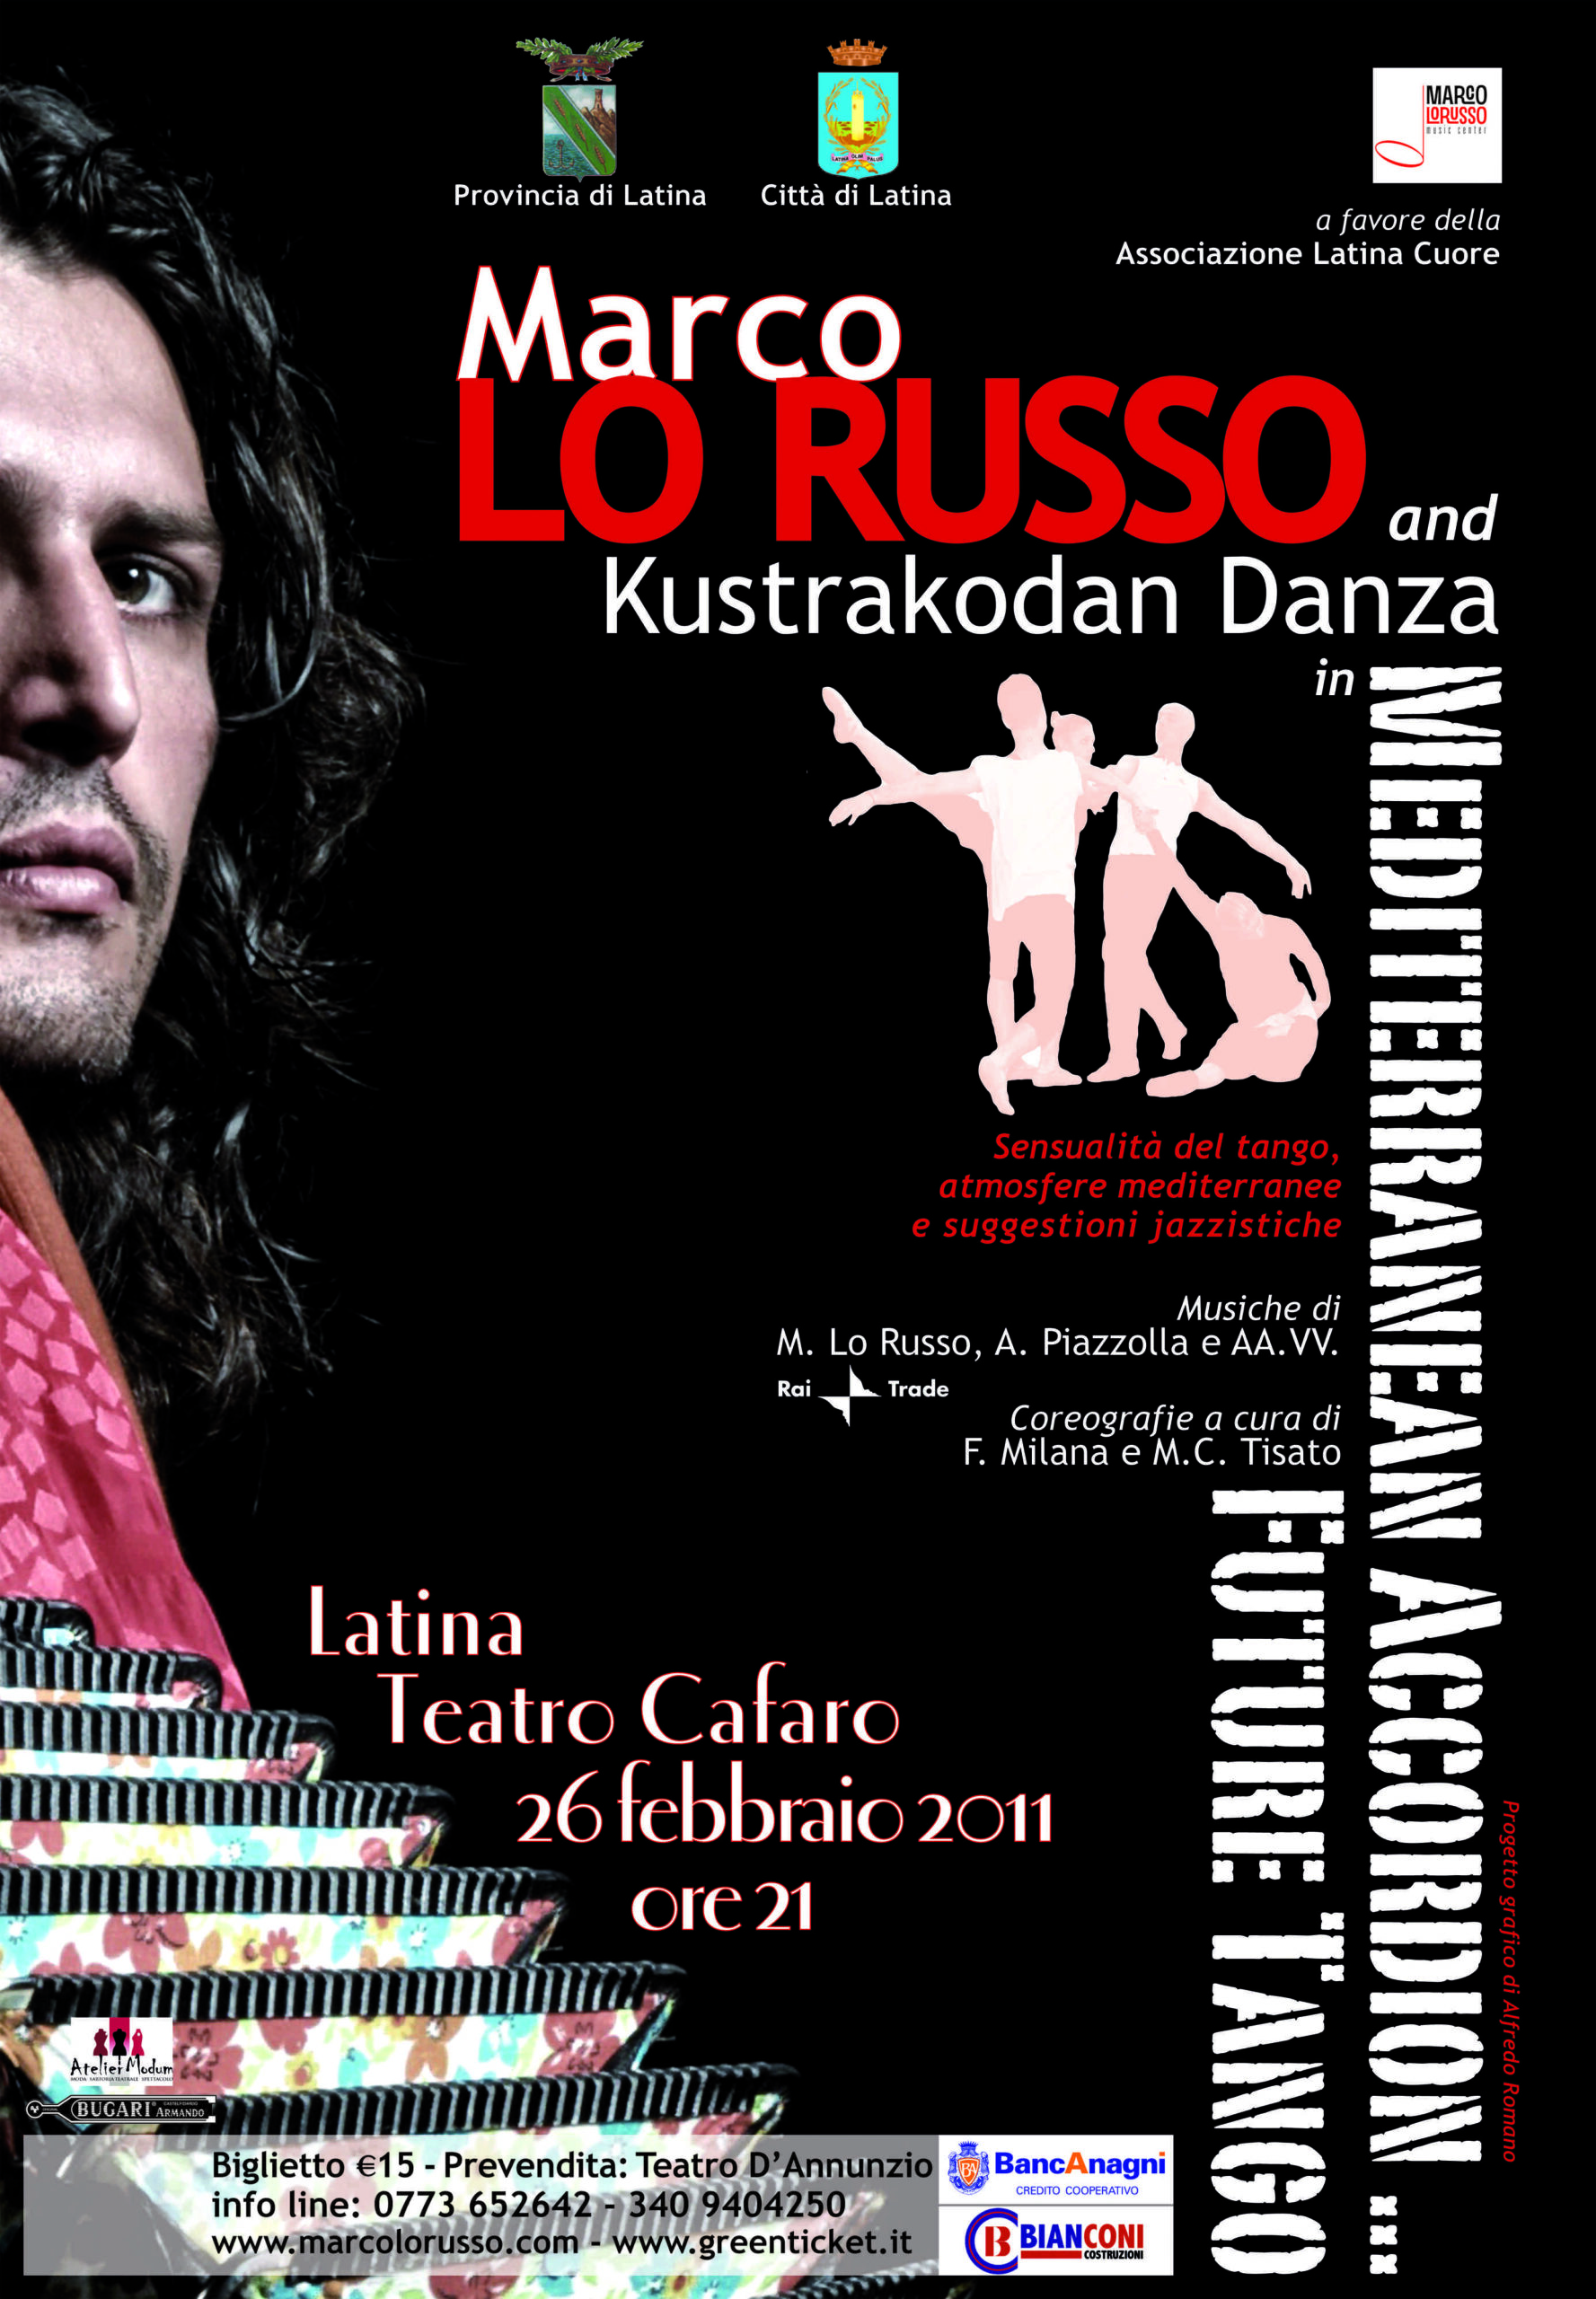 Marco Lo Russo in Mediterranean Accordion Future Tango